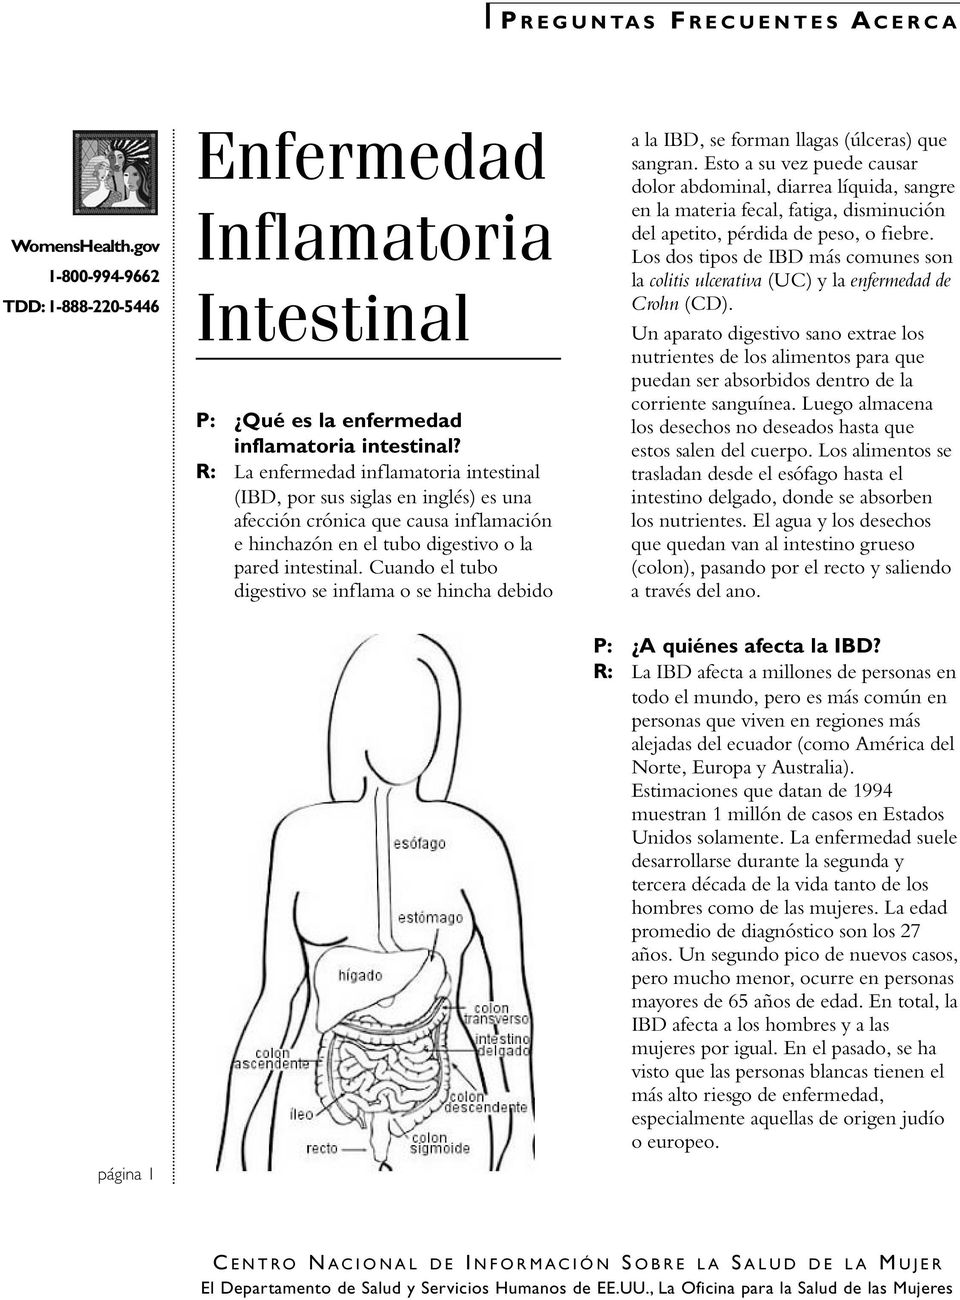 Los dos tipos de IBD más comunes son la colitis ulcerativa (UC) y la enfermedad de Intestinal Crohn (CD).